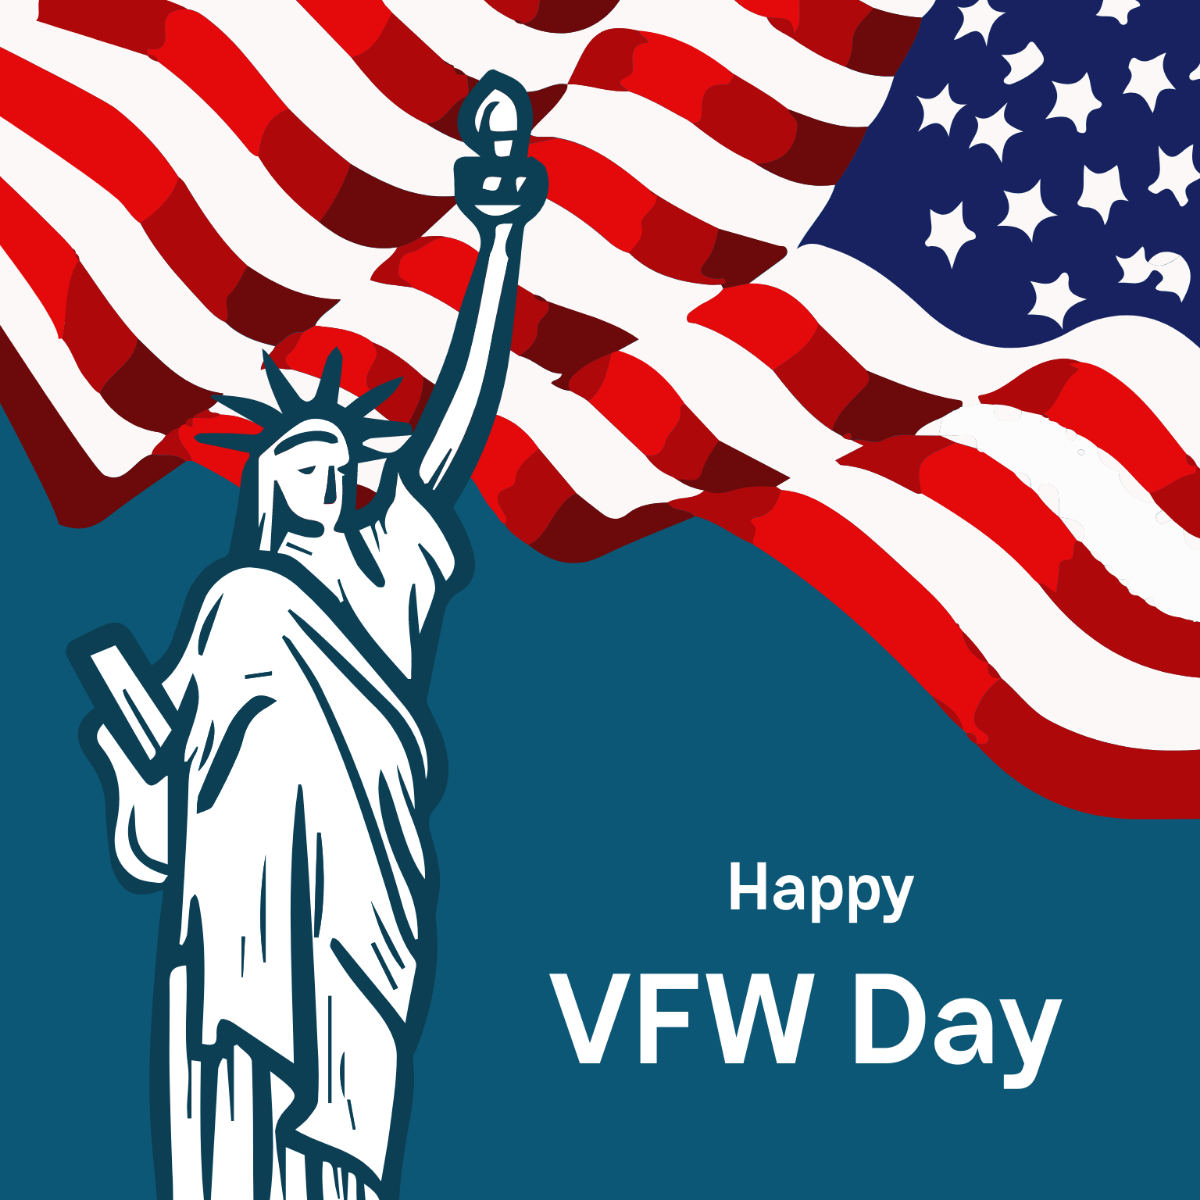 Happy VFW Day Vector